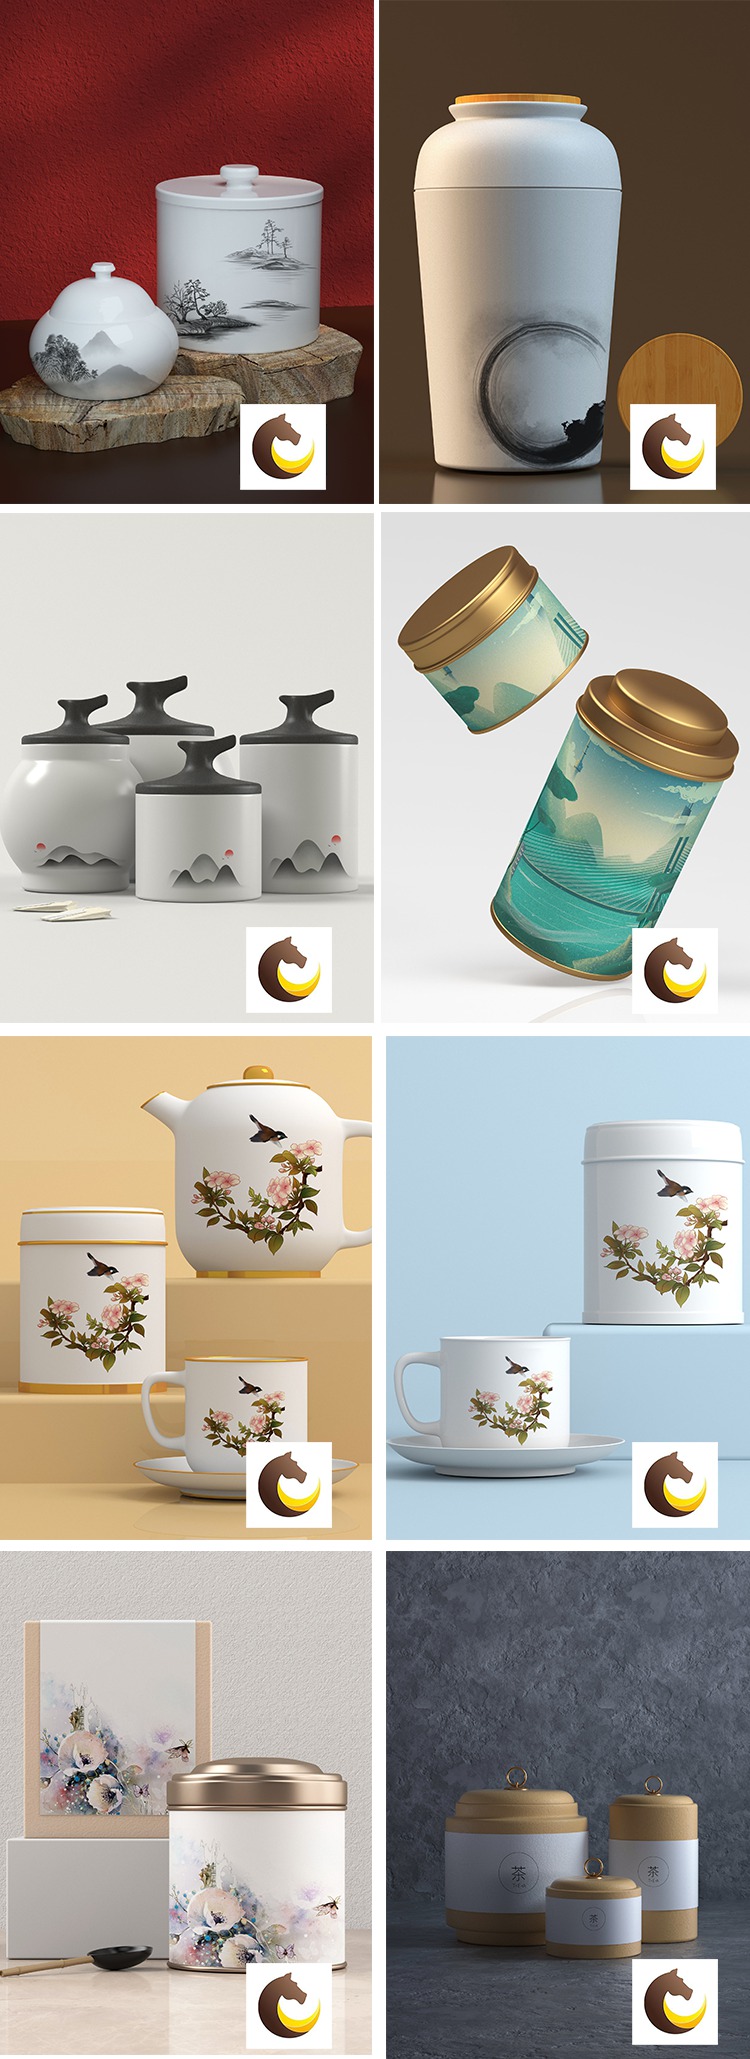 100款高端品牌茶叶茶具产品名片包装效果VI智能贴图样机 图片素材 第2张